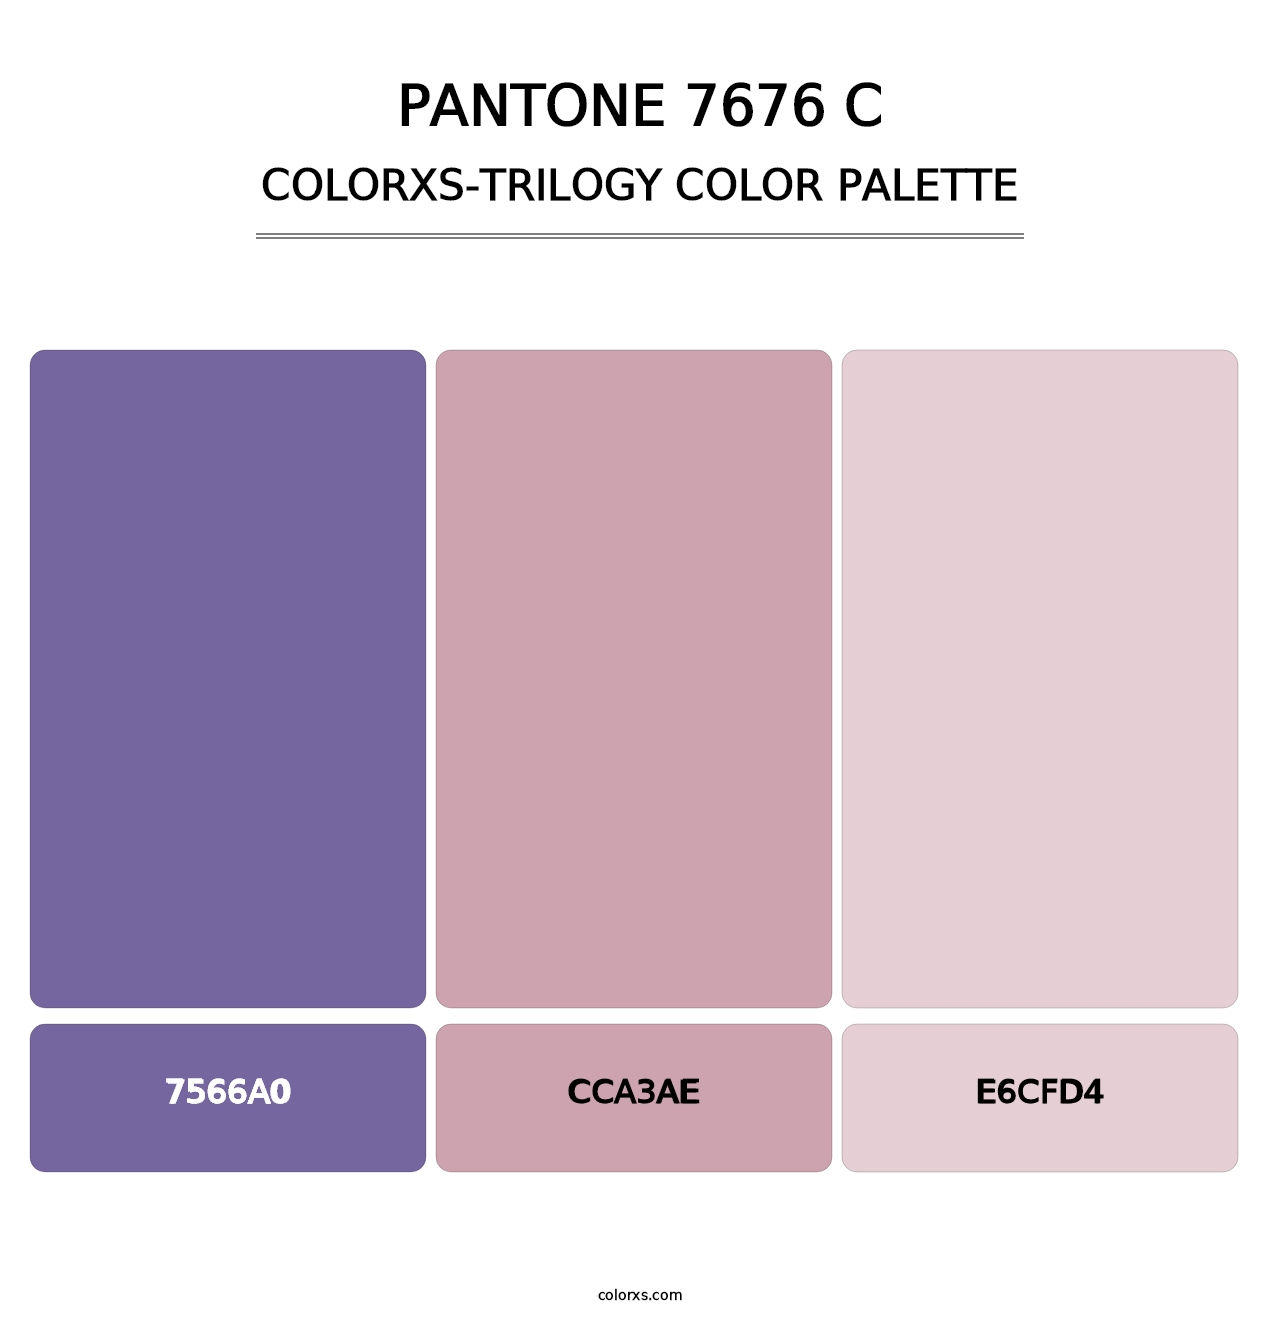 PANTONE 7676 C - Colorxs Trilogy Palette